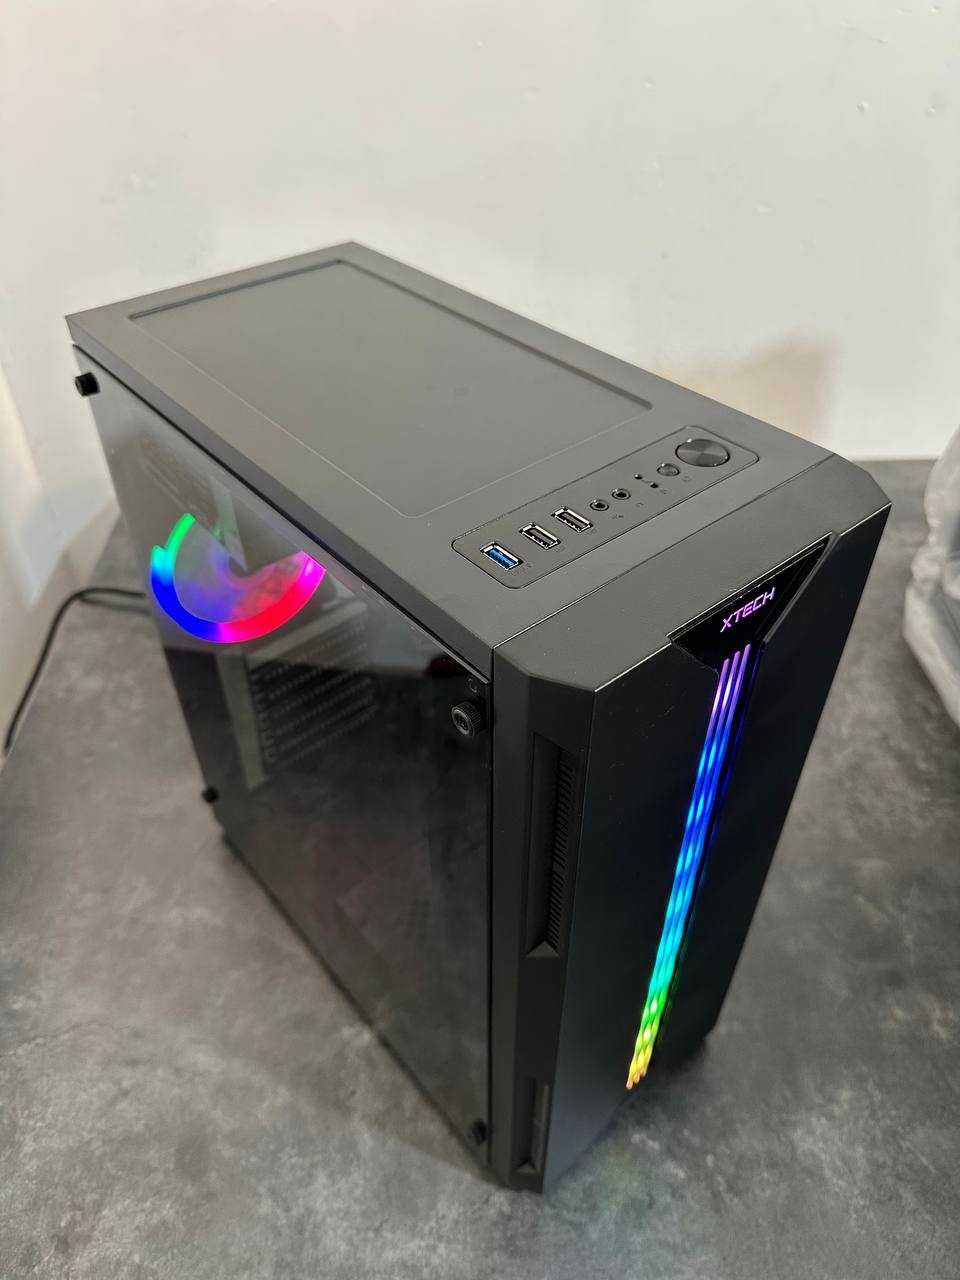 Xtech case RGB (Модель P-06) игровой кейс